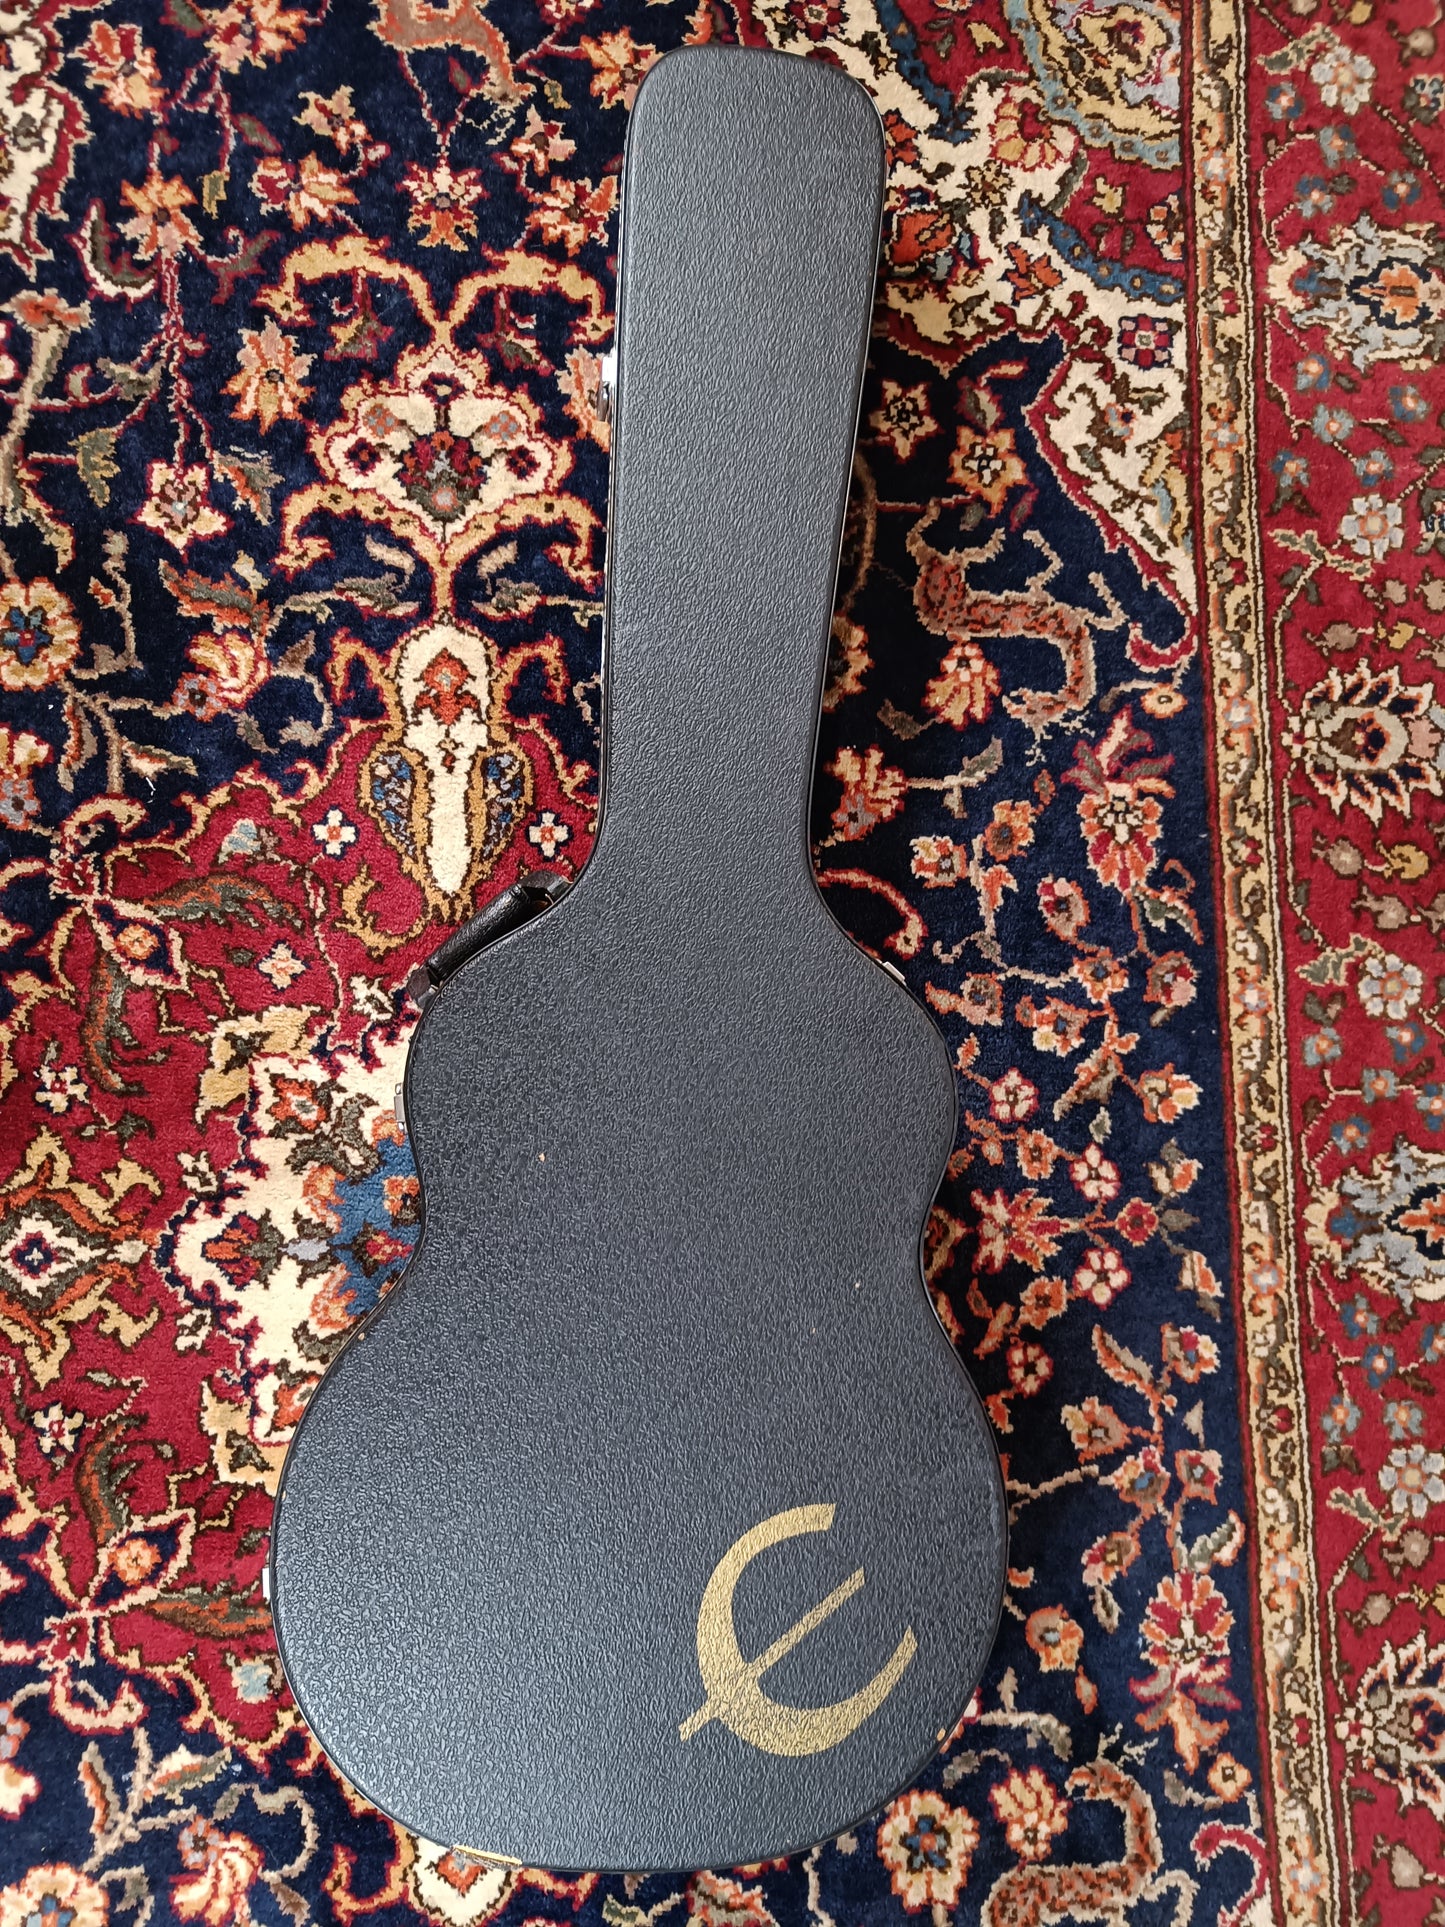 Gibson ES-335TD 1980 Sunburst